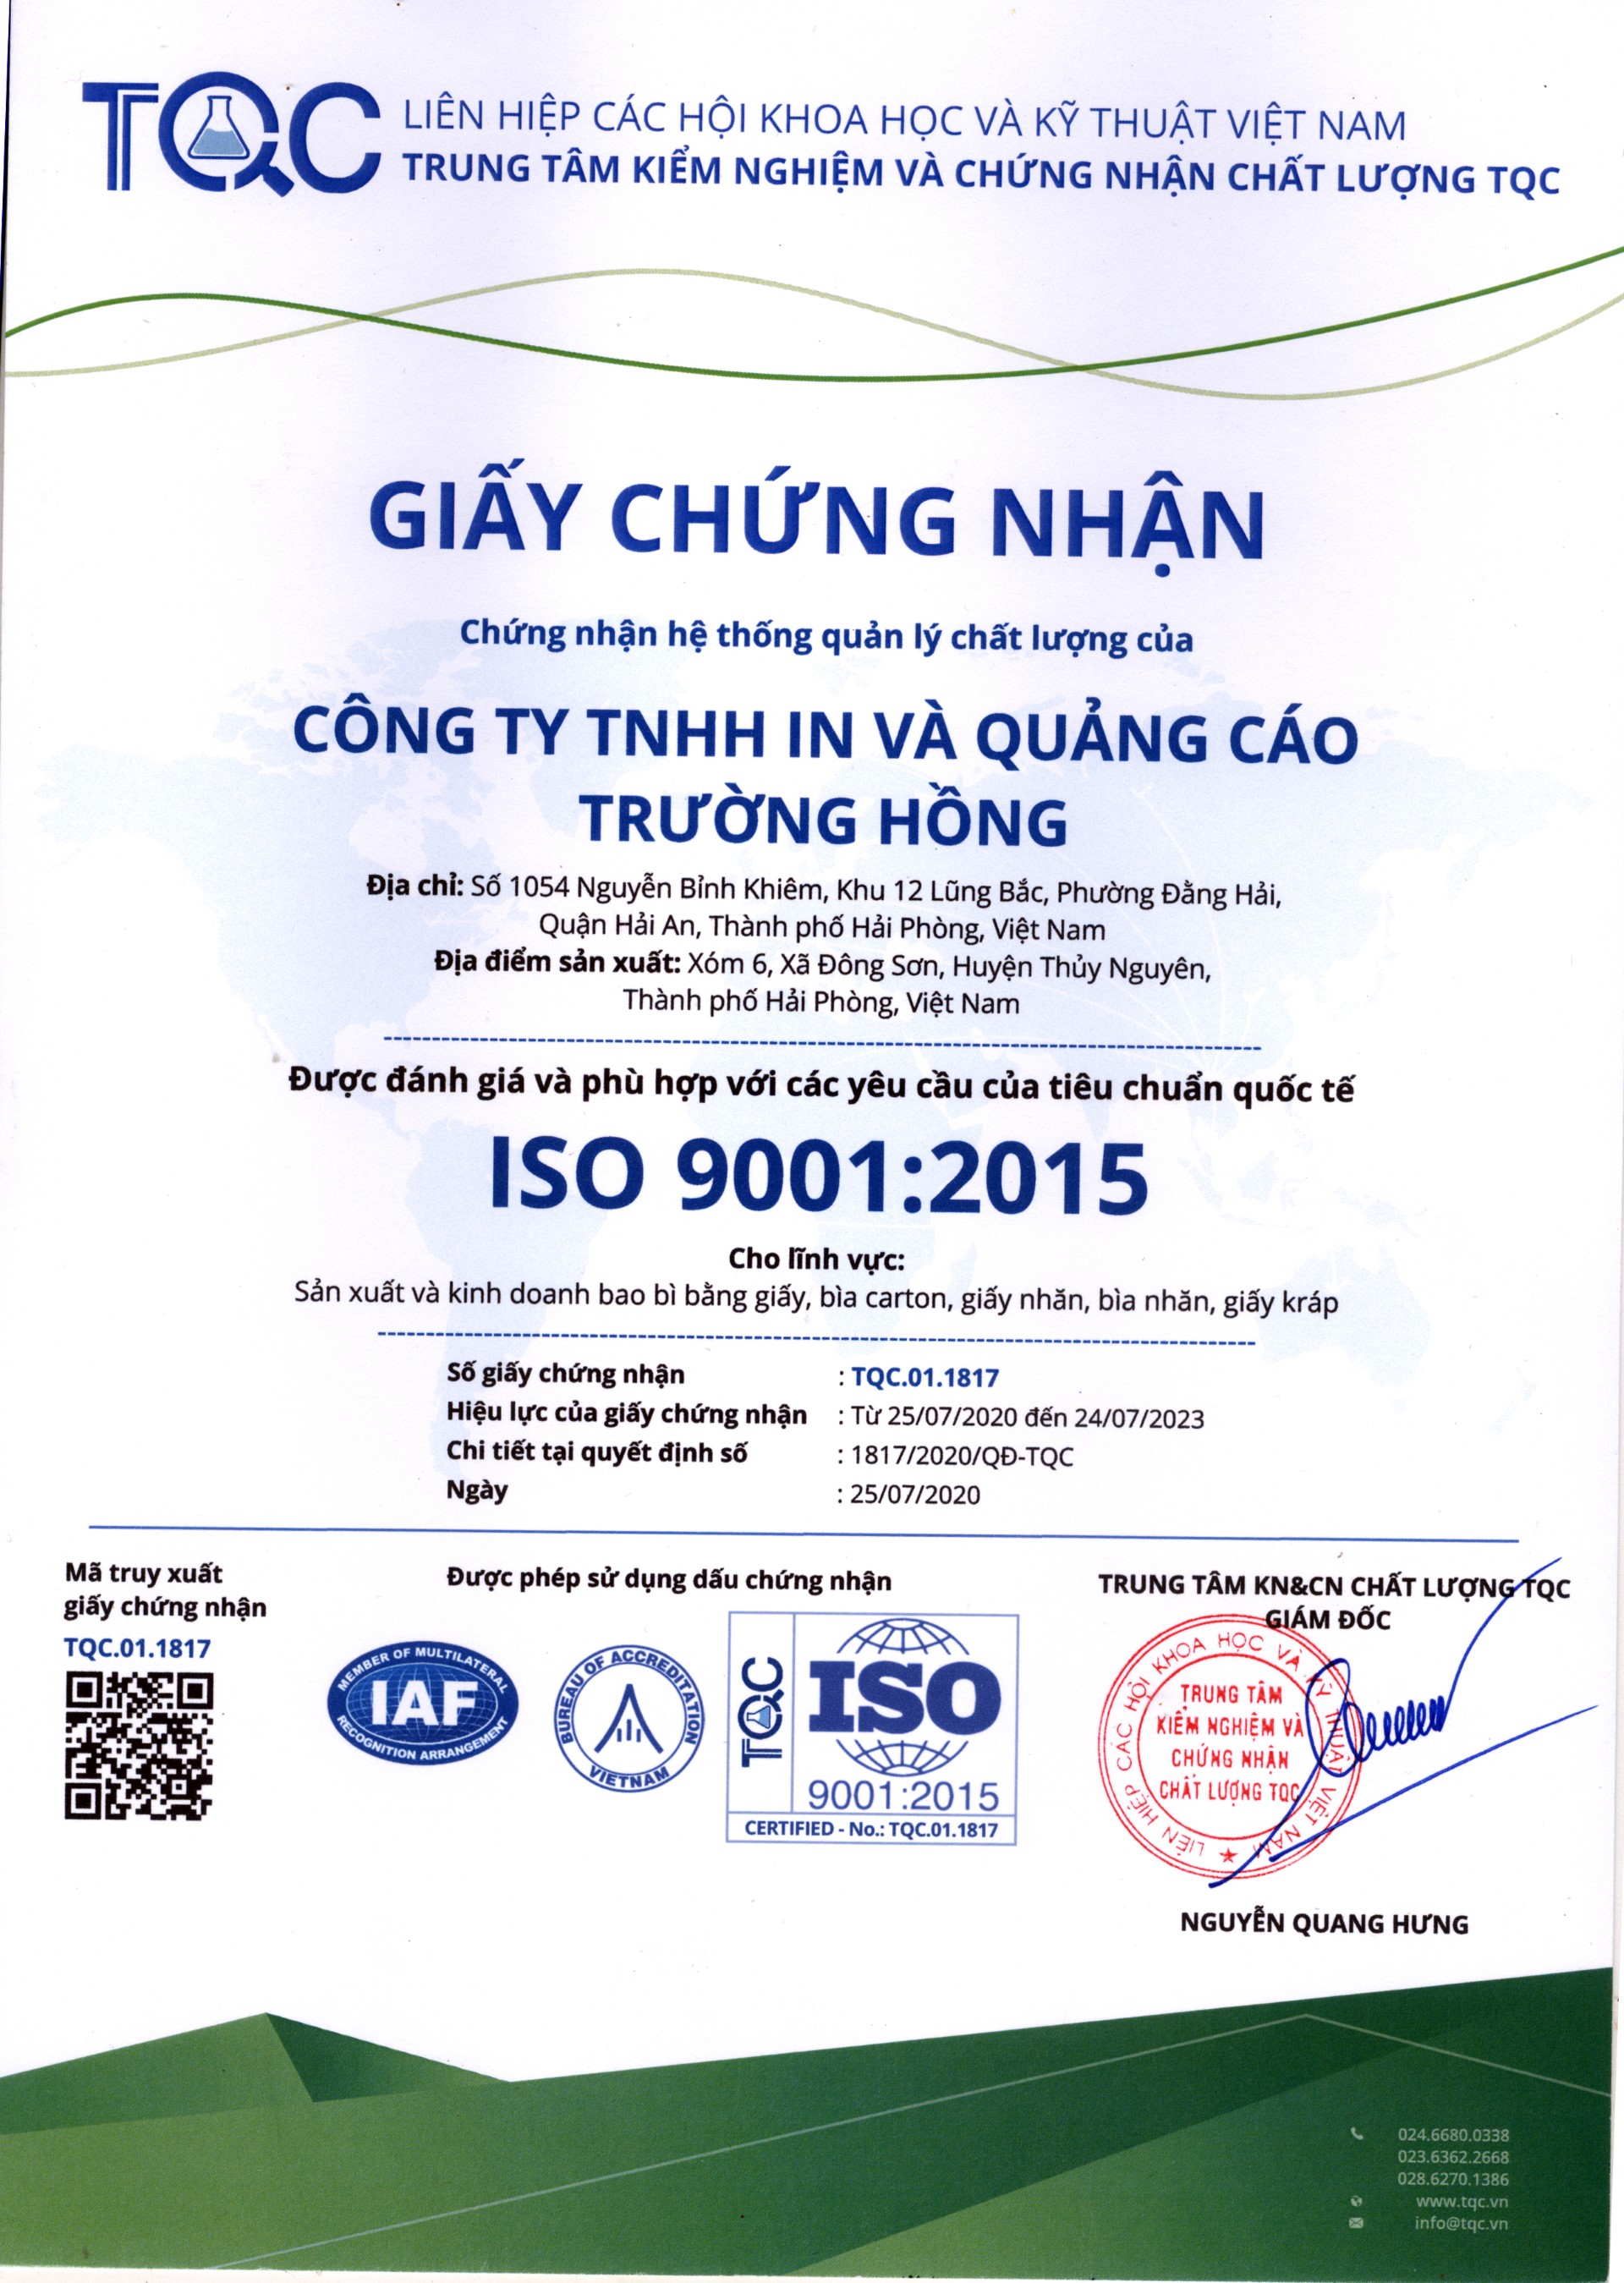 Giấy chứng nhận ISO  9001:2015 - Bao Bì Trường Hồng - Công Ty TNHH In Và Quảng Cáo Trường Hồng